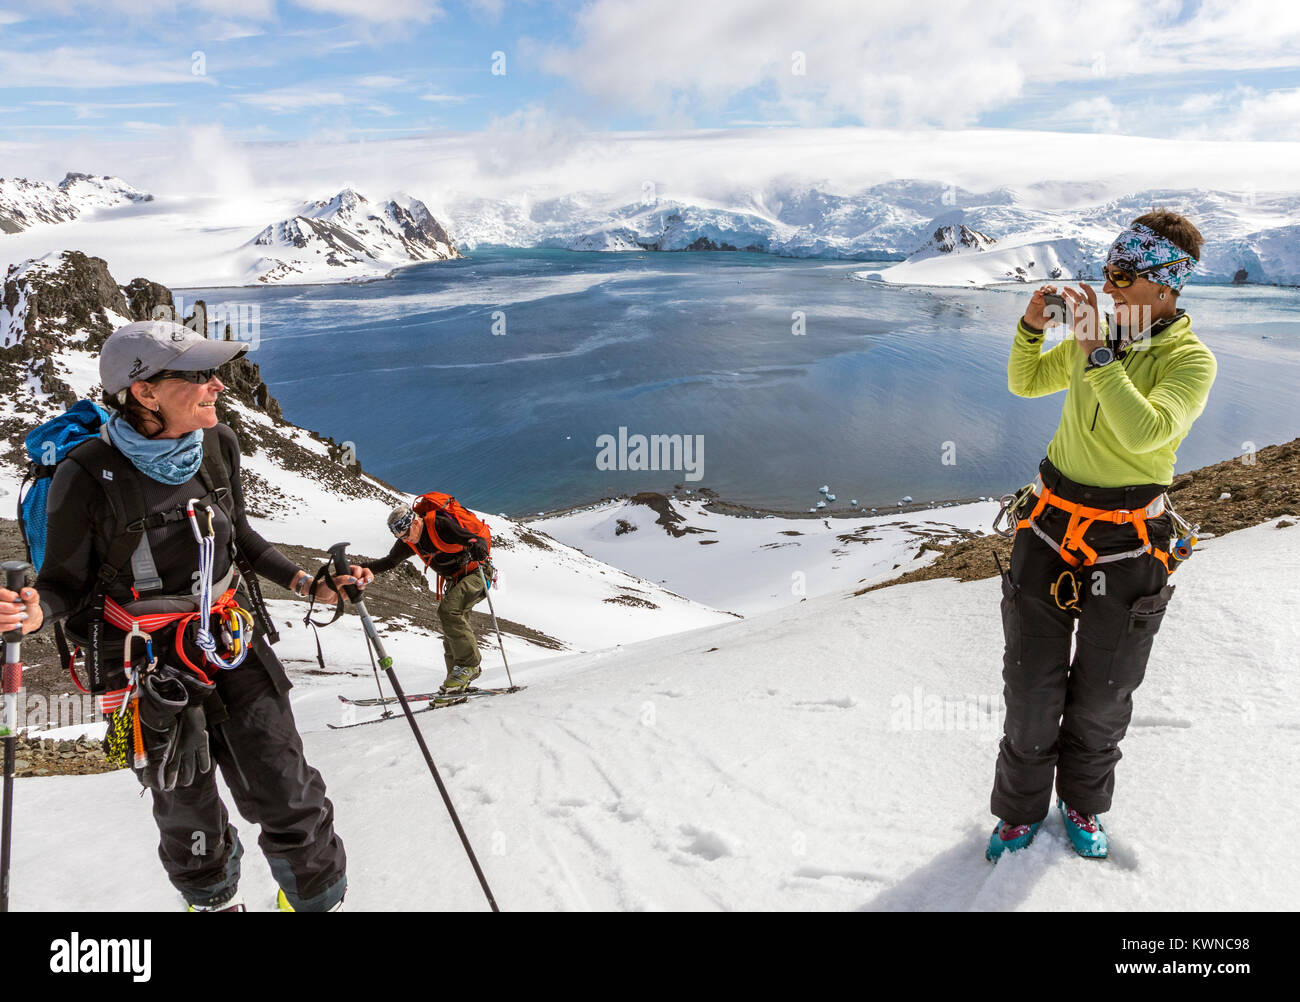 Les alpinistes encordés Ski ensemble pour la sécurité de l'utilisation des peaux synthétiques crevasses sur des skis à monter en amont, l'île Livingston, Antarctique Banque D'Images